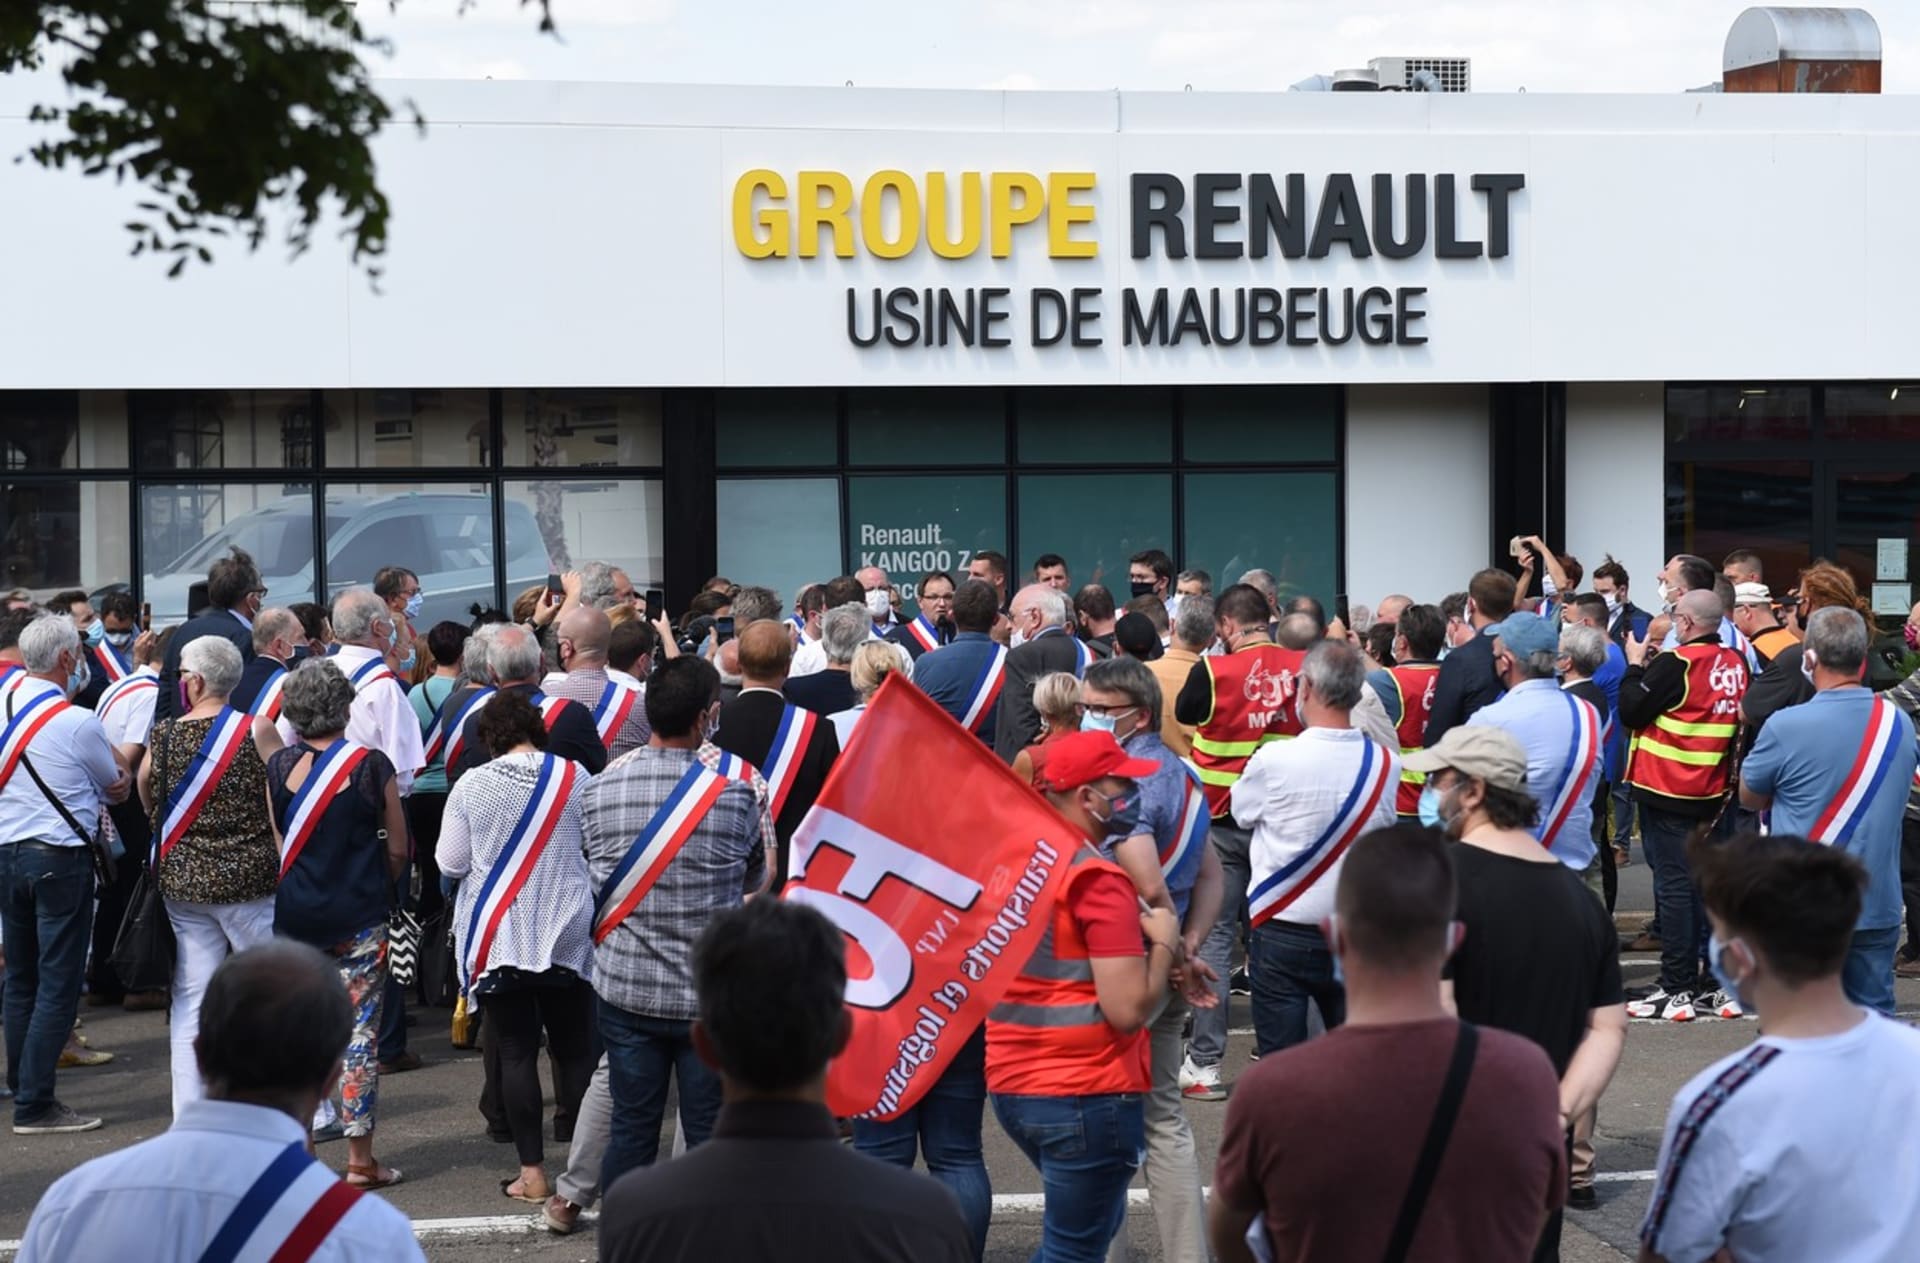 Zaměstnanci automobilky Renault protestují ve francouzském městě Feignies proti plánům o snižování počtu zaměstnanců